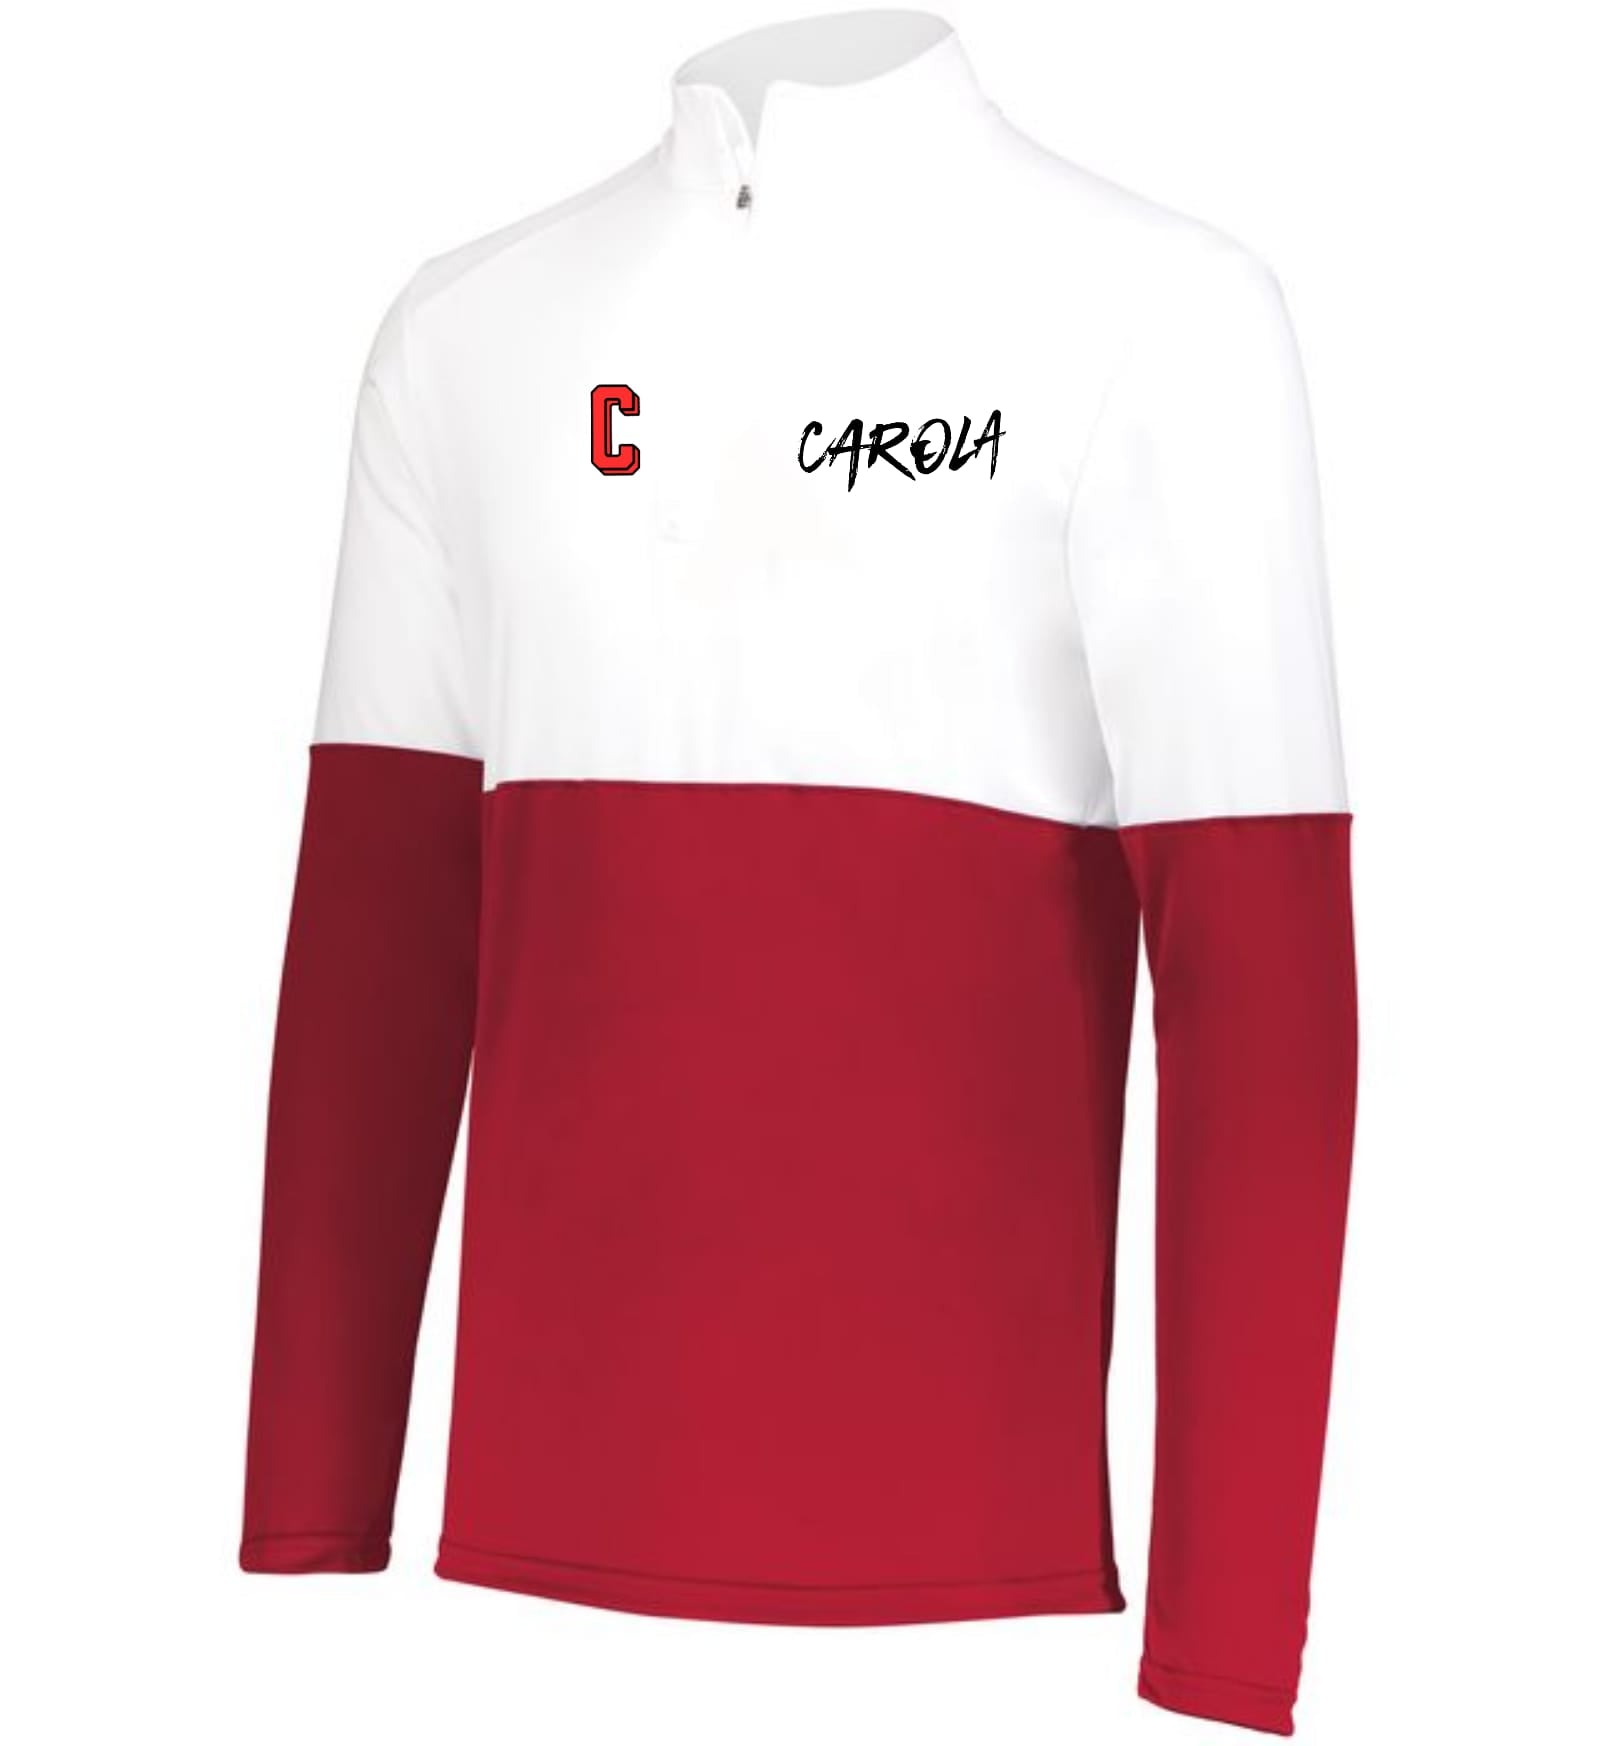 Carola Jacket blanco Rojo – Carolinagigantes